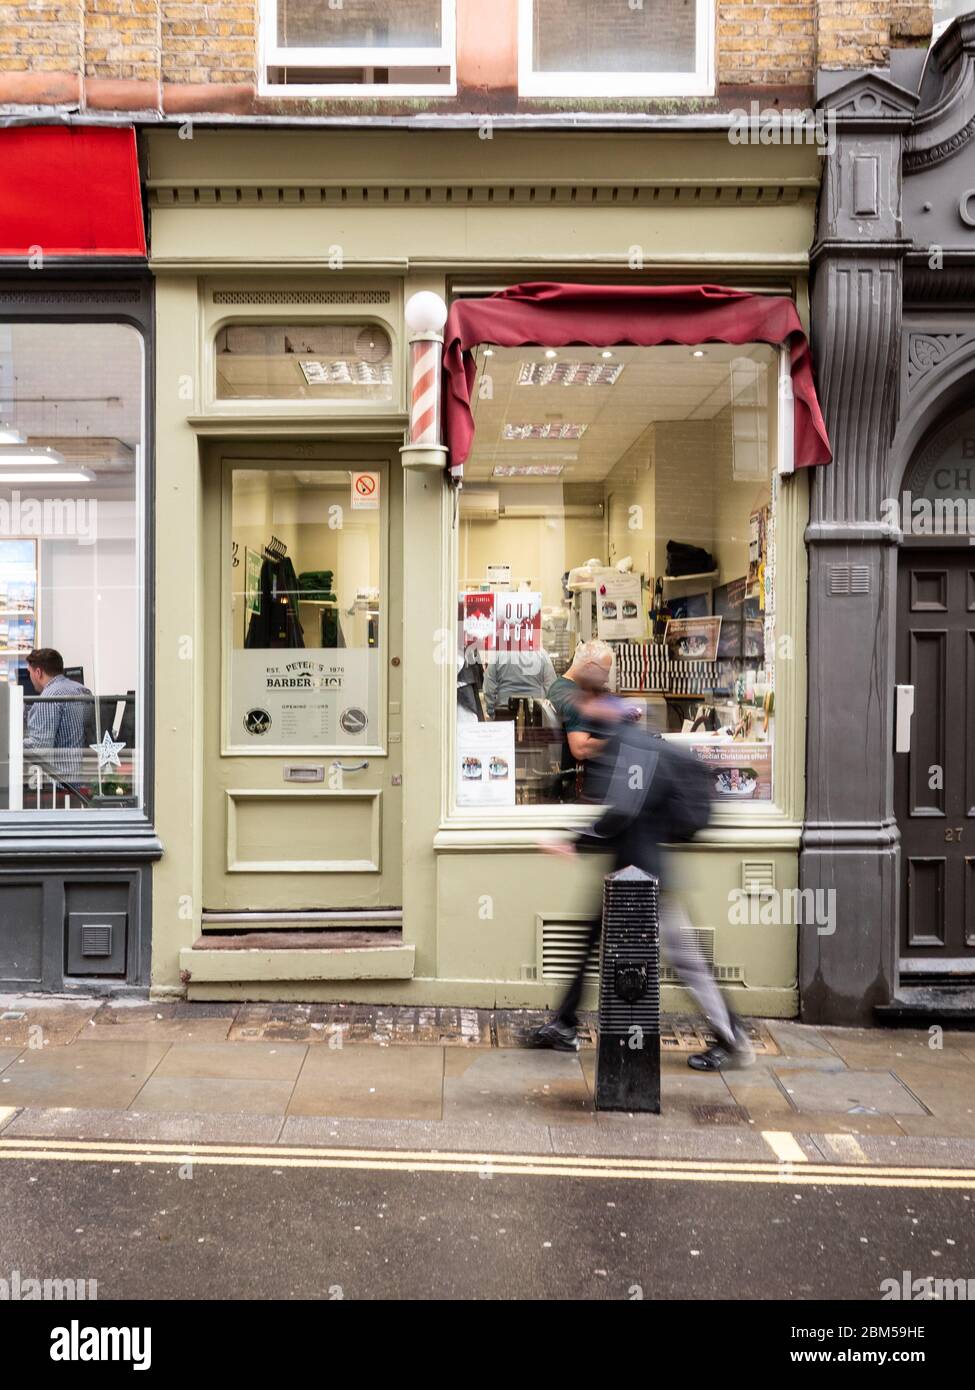 Magasin Barbers. Un magasin de coiffure typique de gents de l'arrière-rue dans les ruelles près de Covent Garden, Londres, Angleterre. Banque D'Images